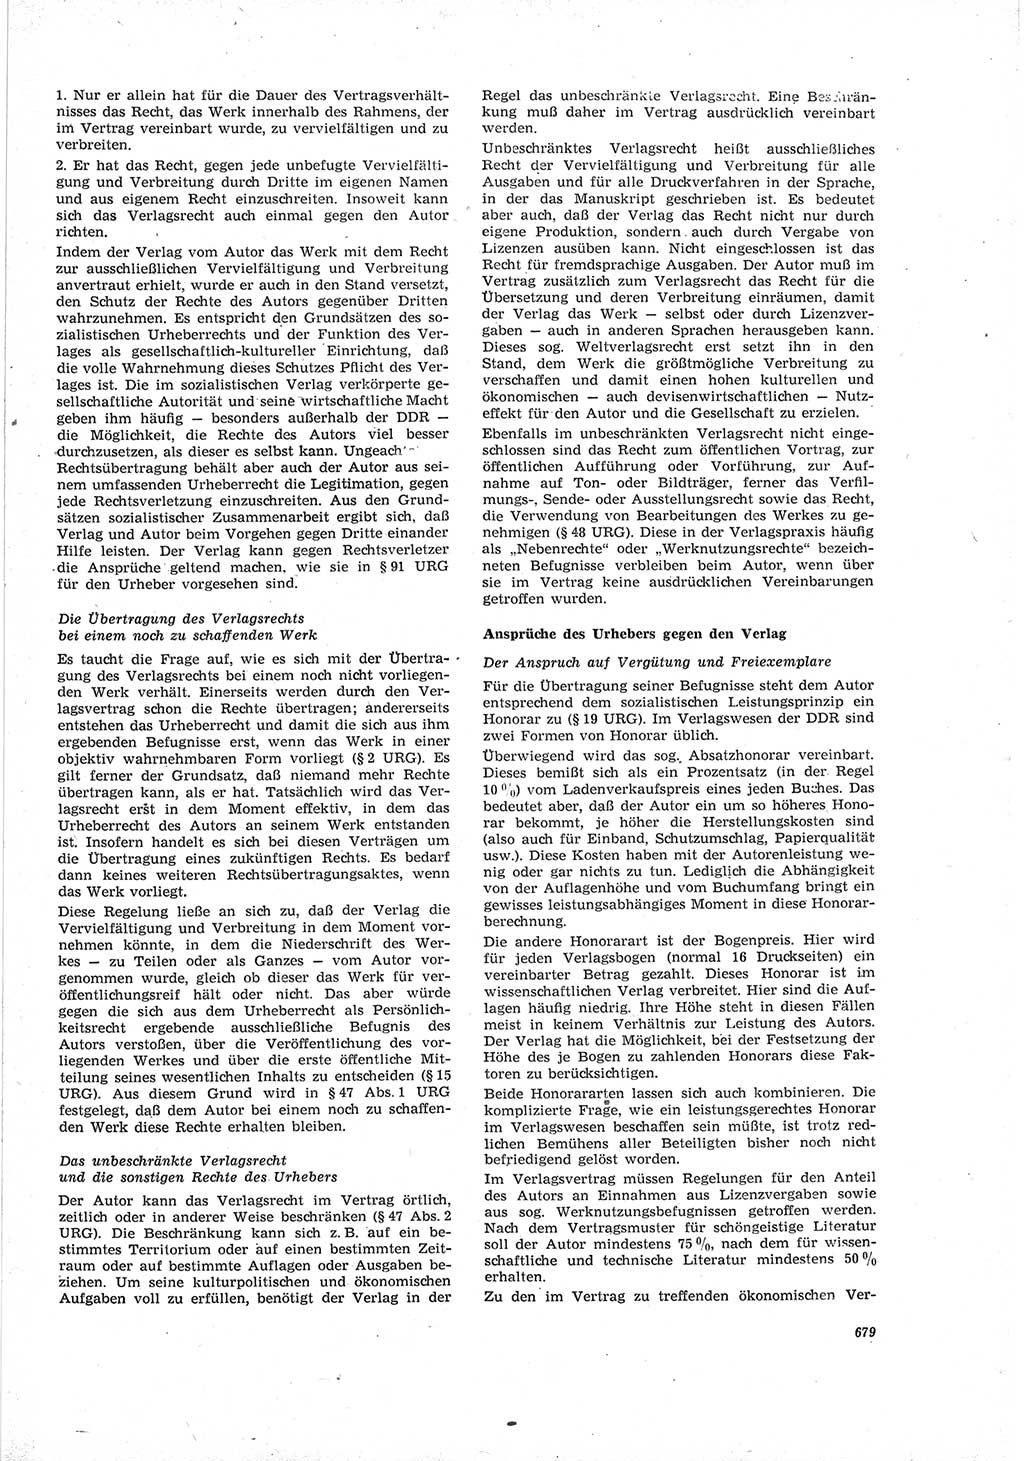 Neue Justiz (NJ), Zeitschrift für Recht und Rechtswissenschaft [Deutsche Demokratische Republik (DDR)], 19. Jahrgang 1965, Seite 679 (NJ DDR 1965, S. 679)